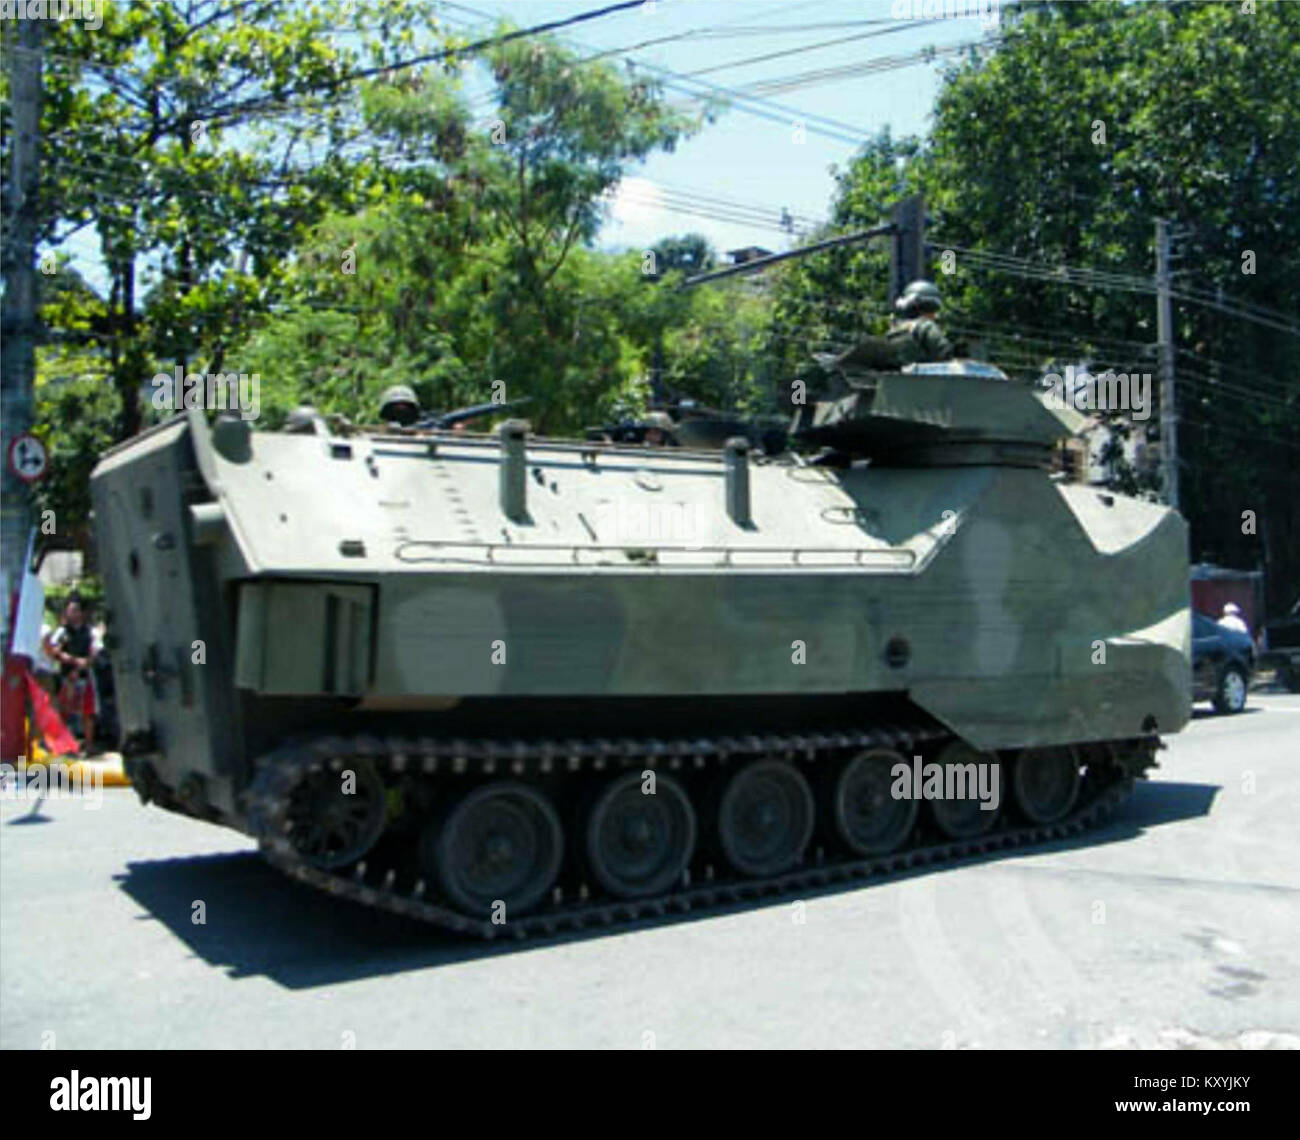 Exército dá apoio a ocupação no Complexo do Alemão - Blindado Stock Photo